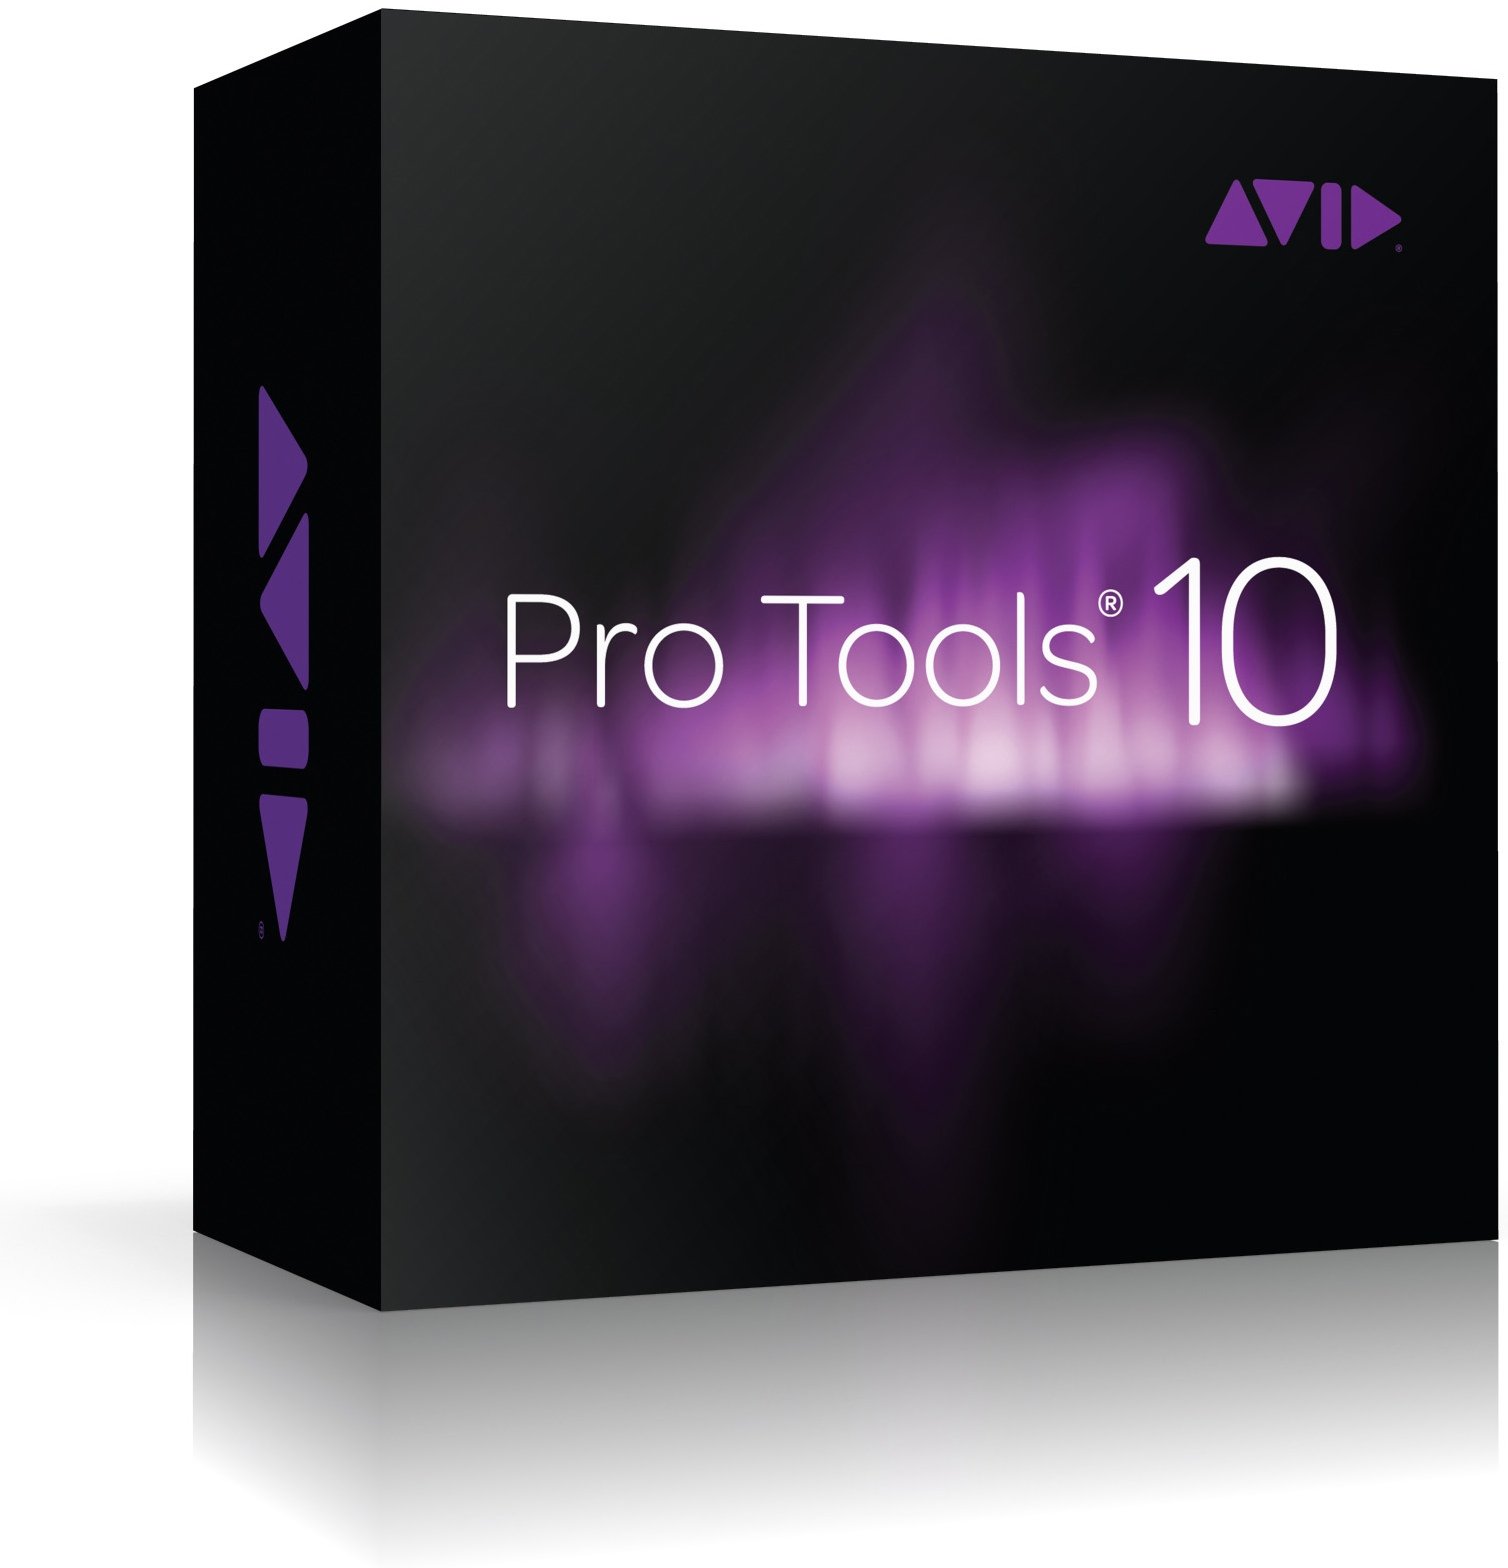 pro tools 10 download drive